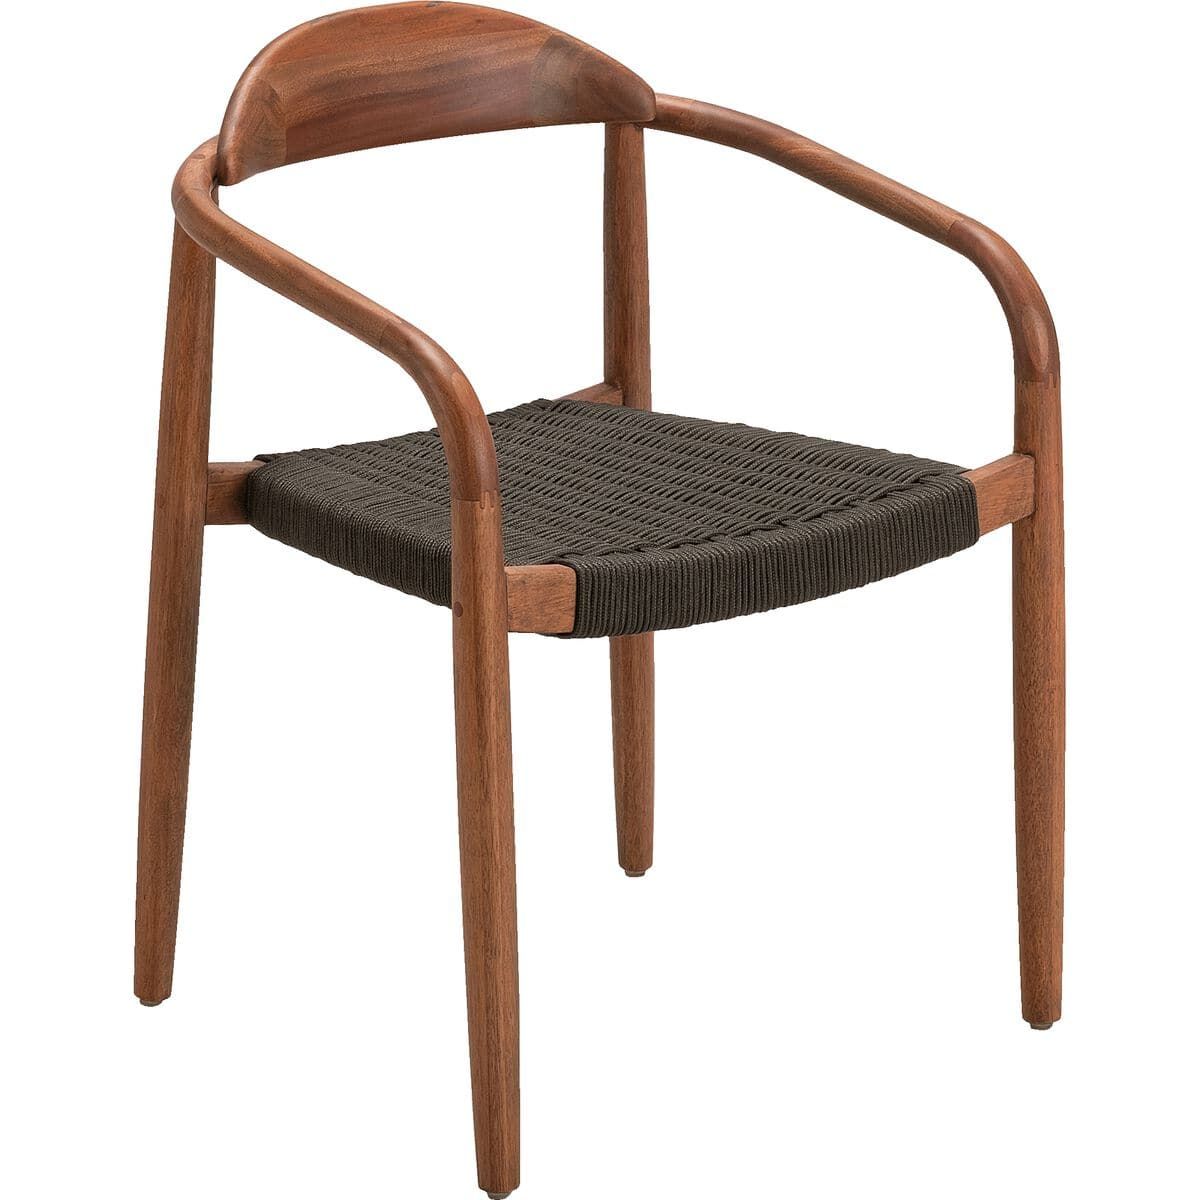 ILIES - Chaise en bois de chêne - bois clair